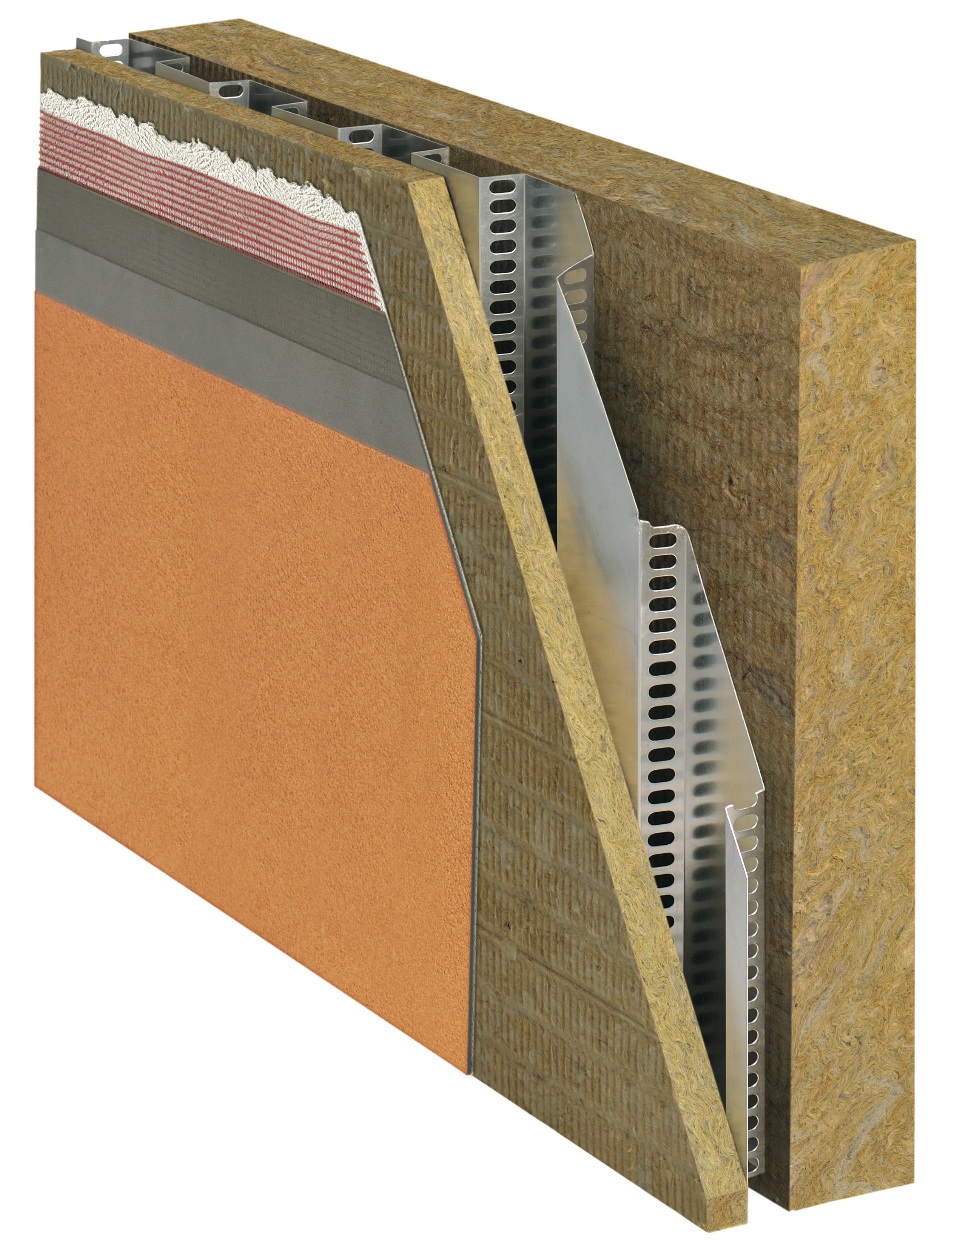 Isolamento termico a cappotto e parete ventilata: due funzioni in un singolo sistema integrato Pannello